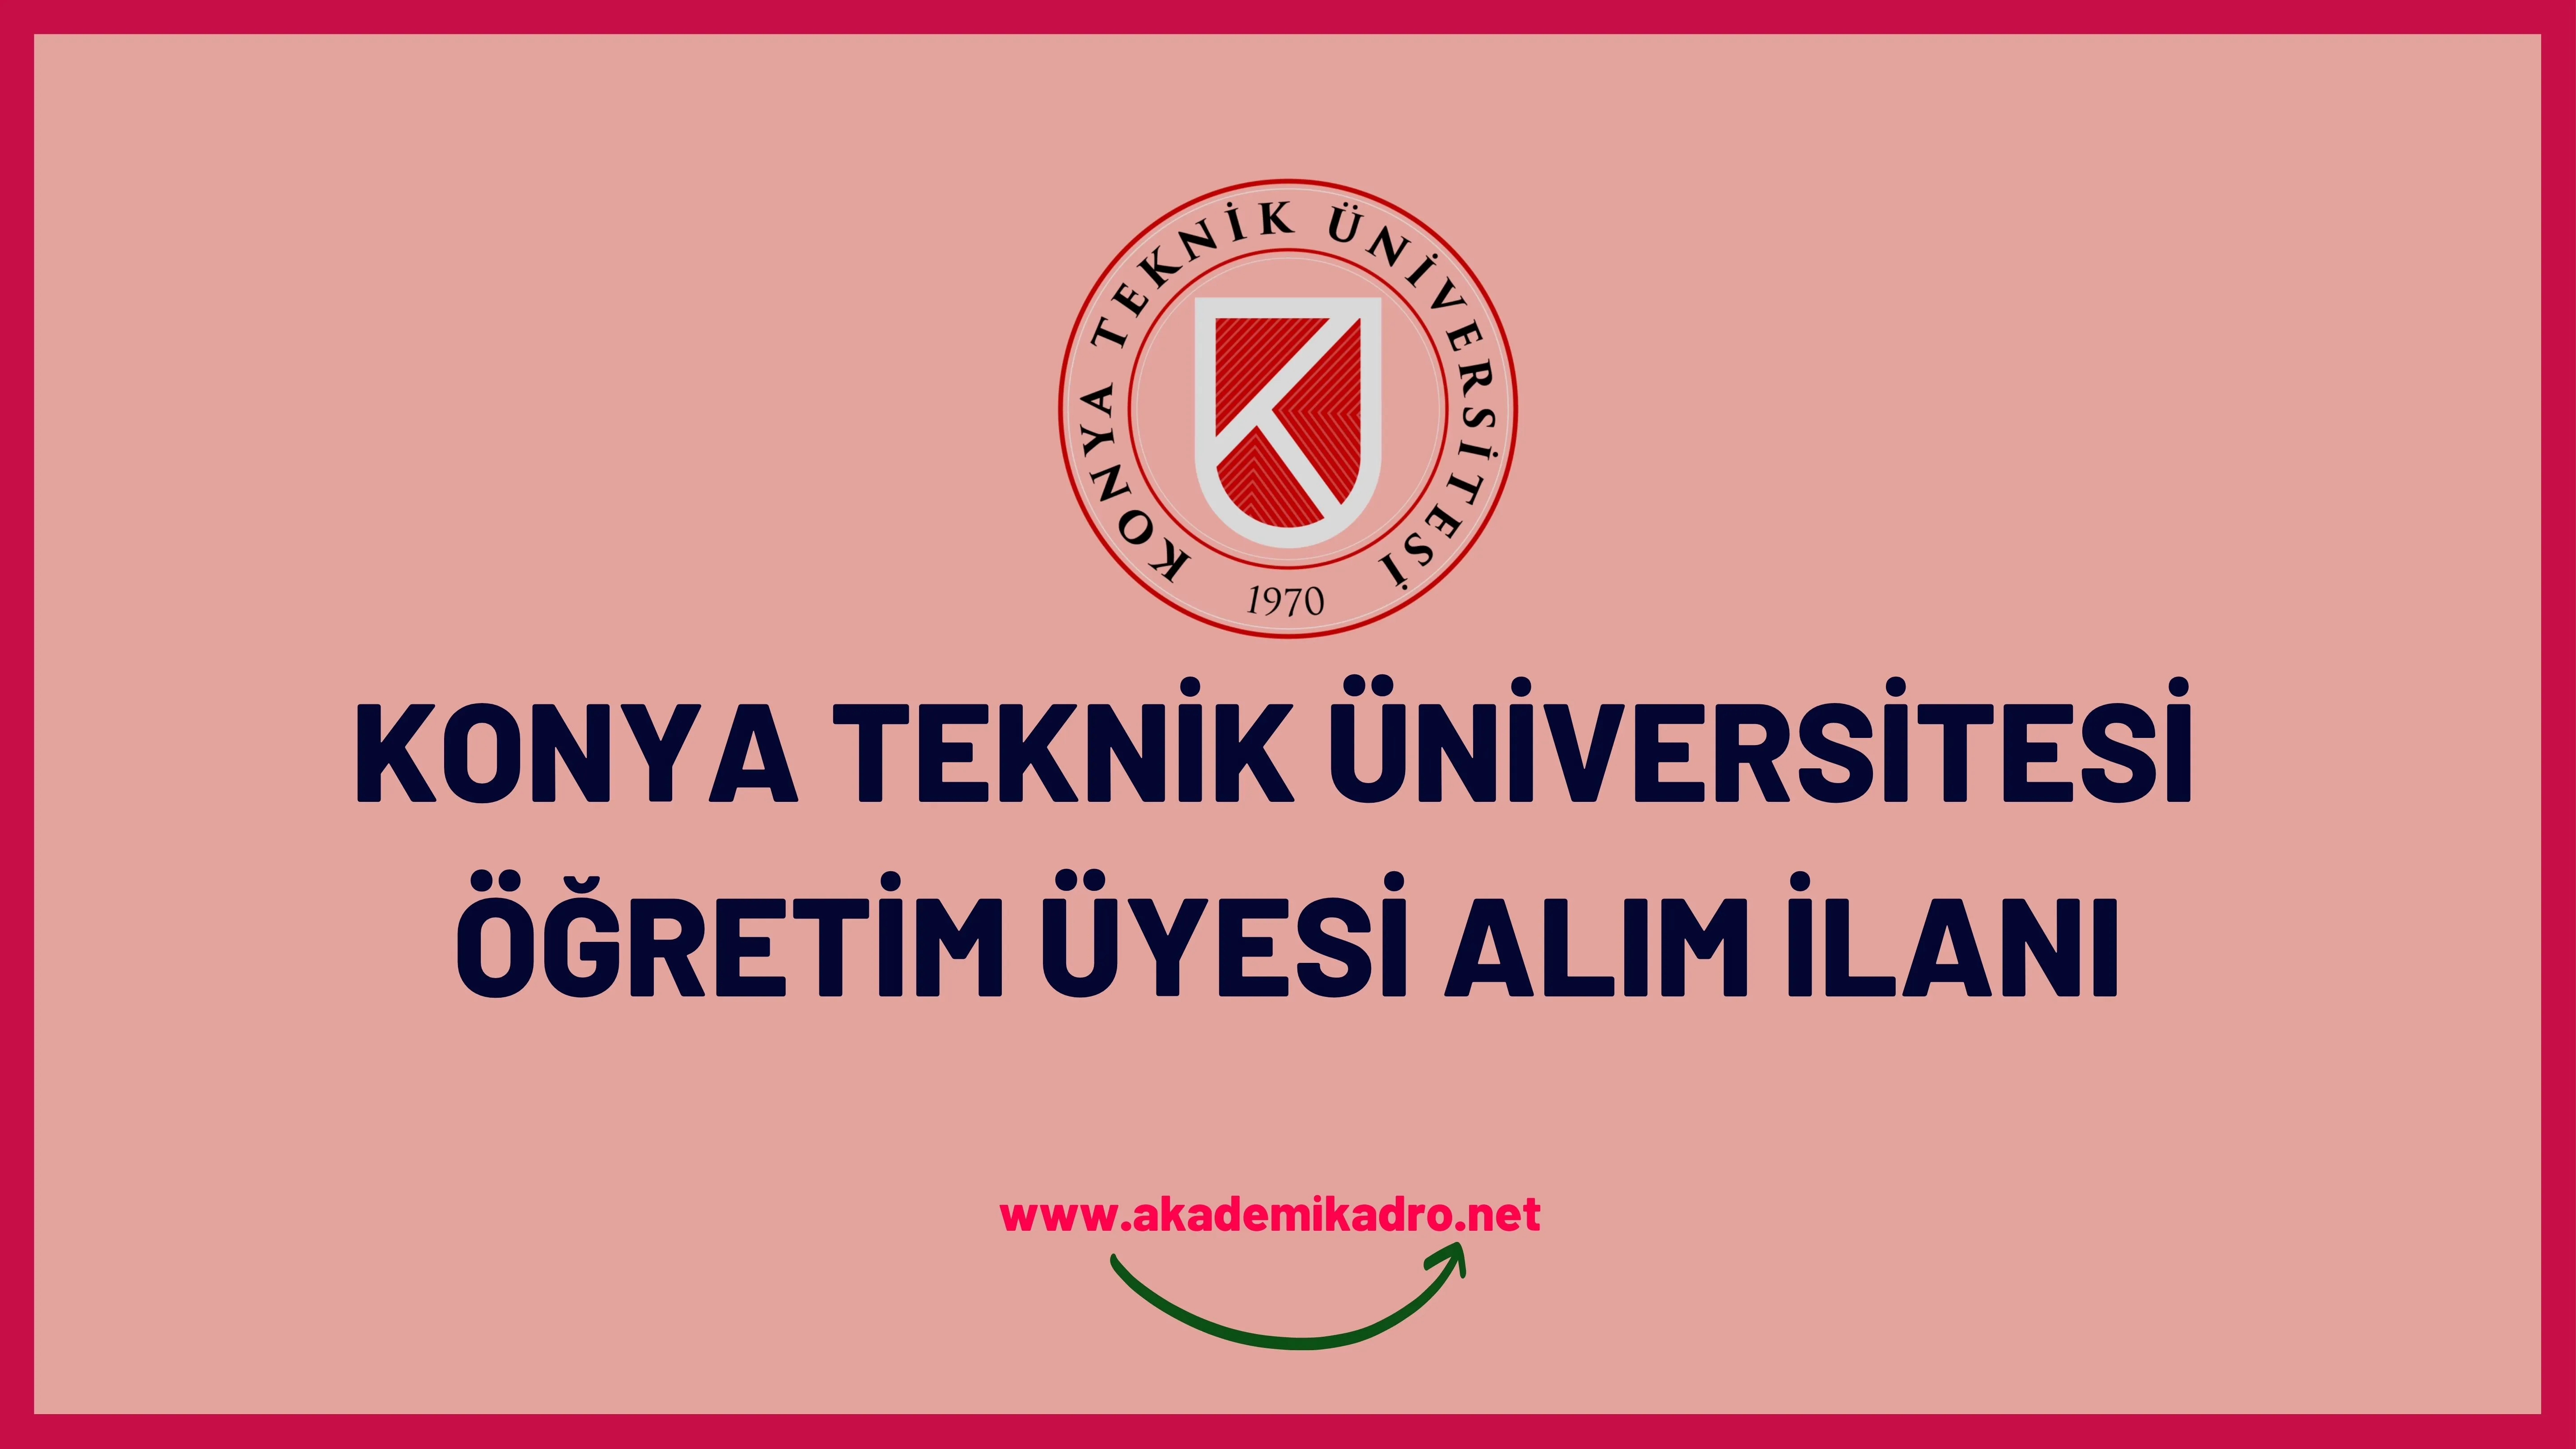 Konya Teknik Üniversitesi 19 akademik personel alacak.